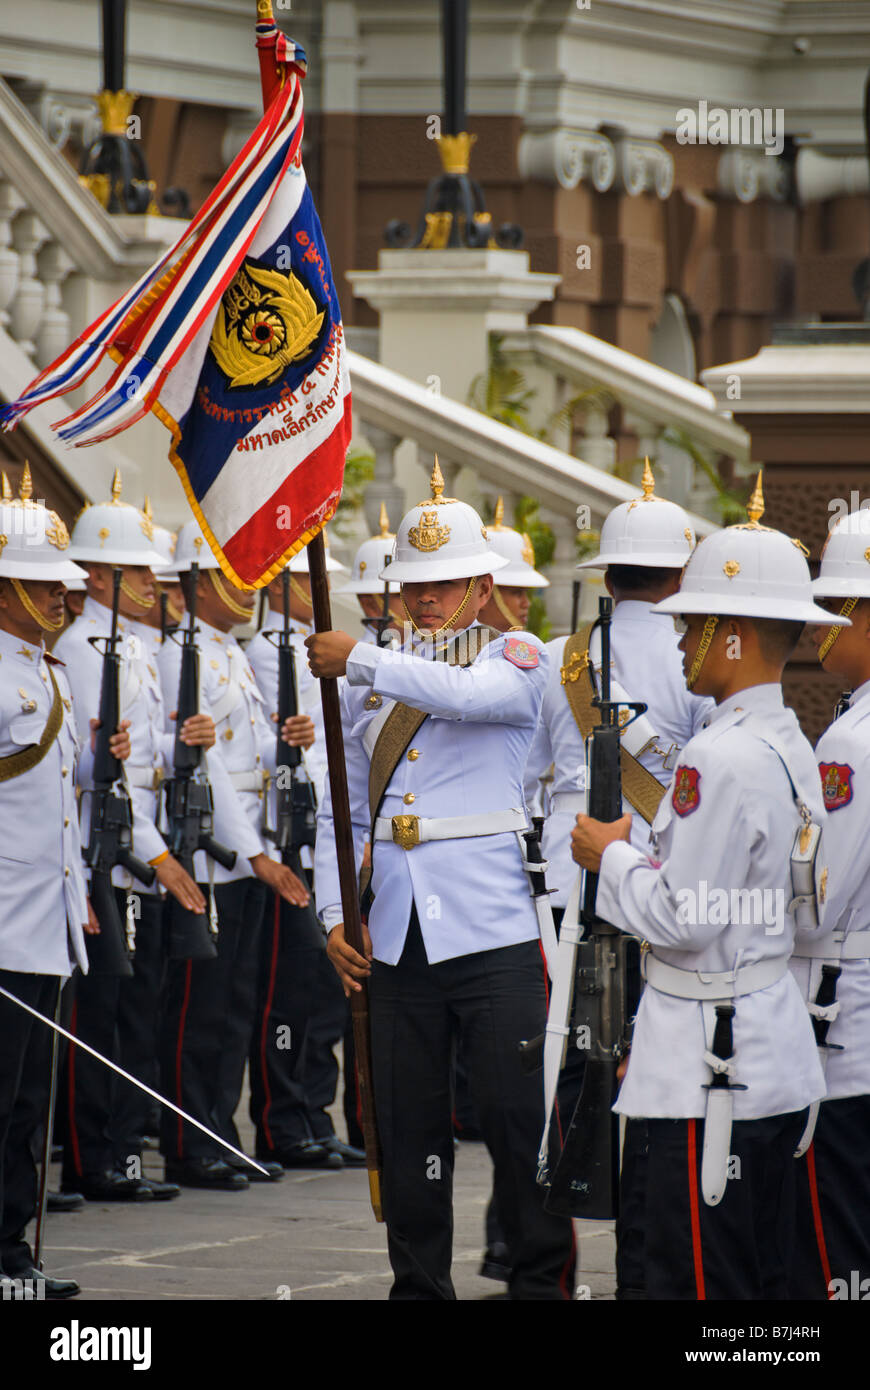 Palastwachen auf Parade - Wat Phra Kaew und dem Grand Palace in Bangkok Zentralthailand Stockfoto